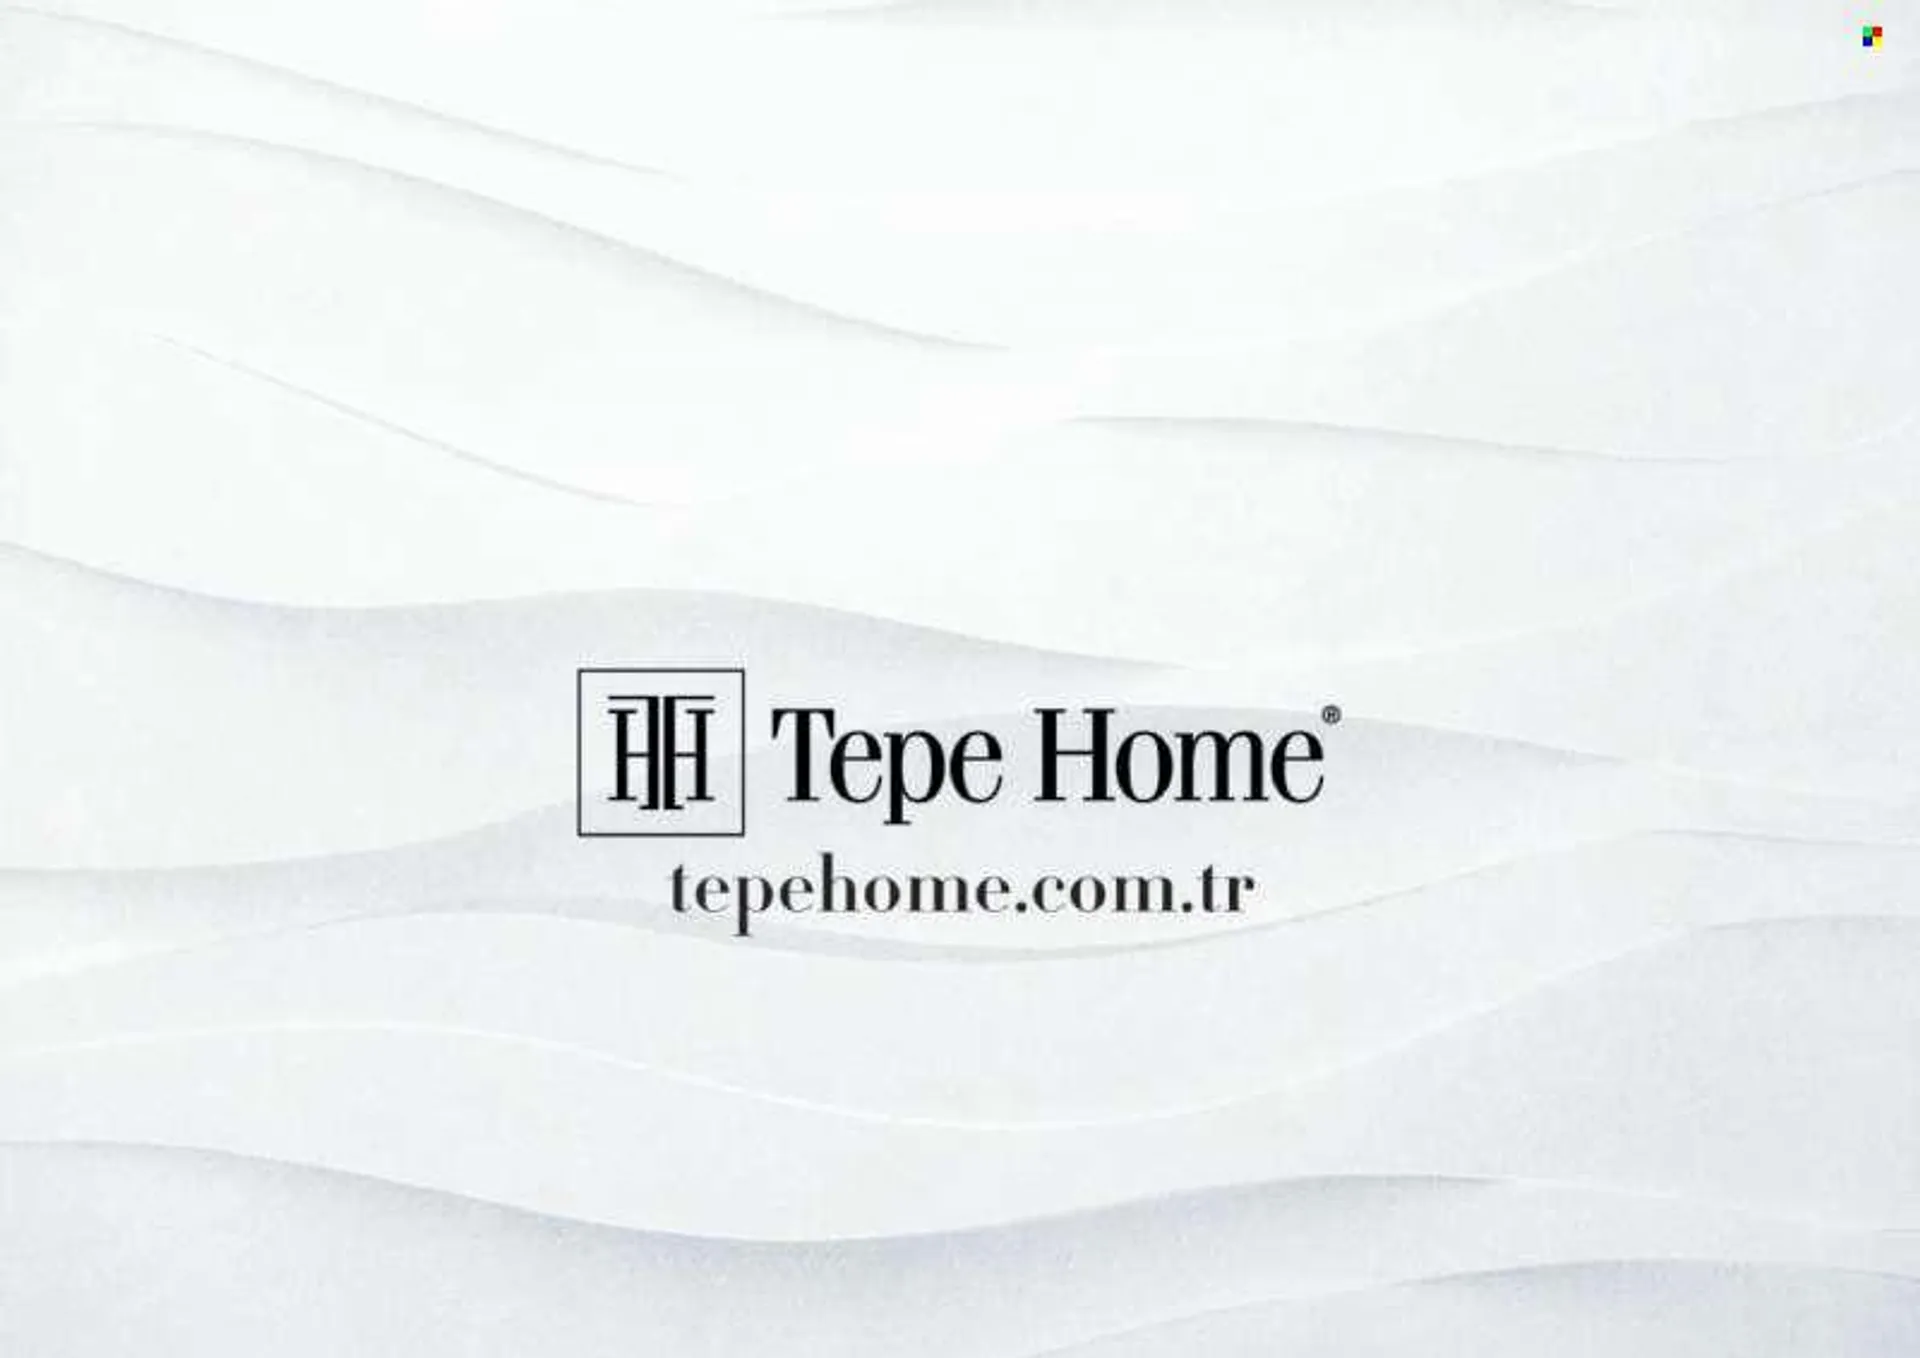 Tepe Home aktüel ürünler, broşür . Sayfa 110.
